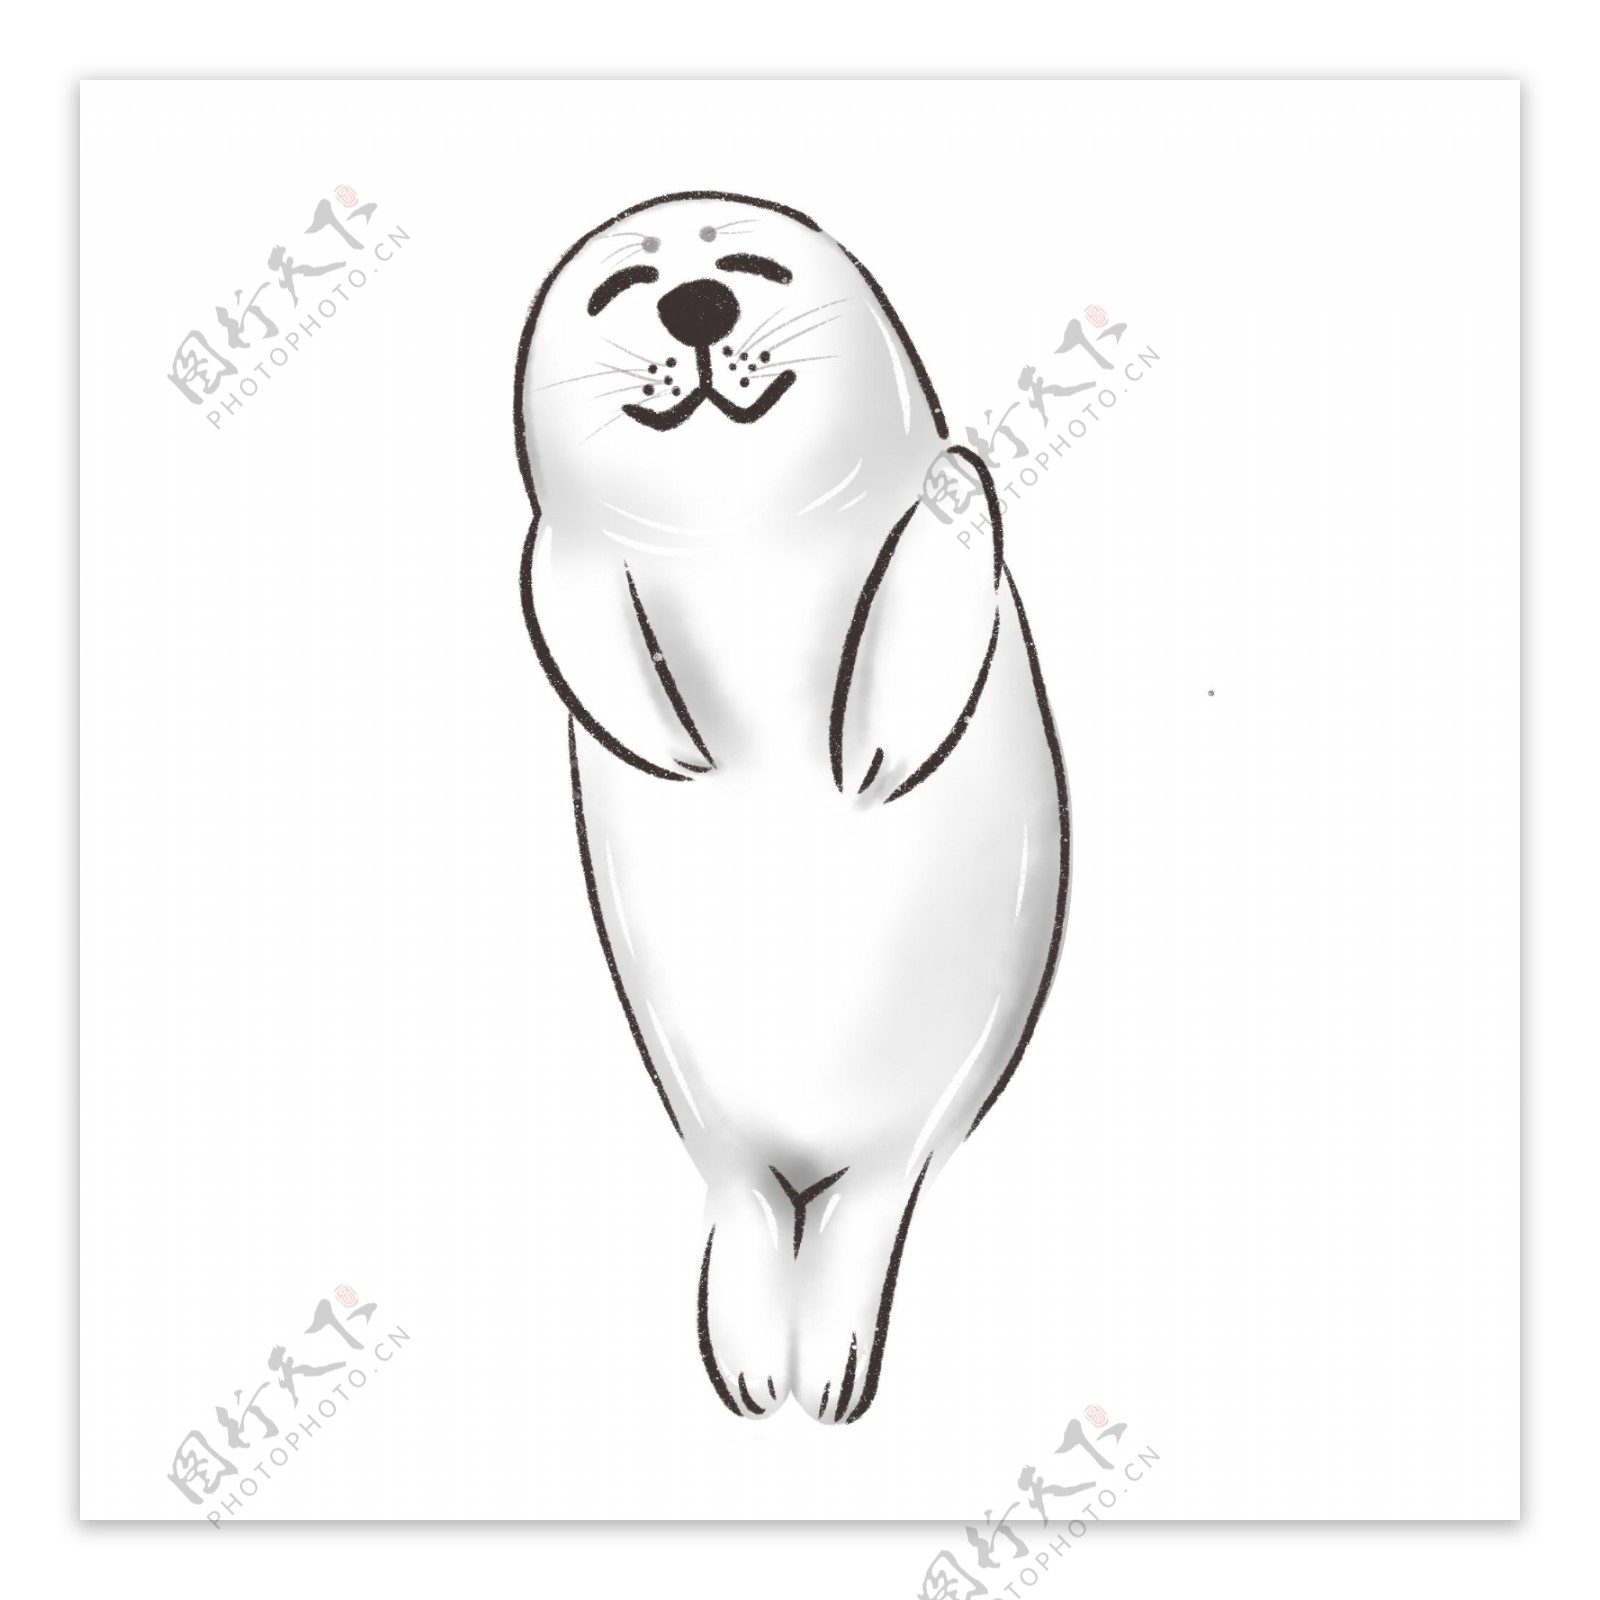 国际海豹节小海豹卡通形象元素手绘